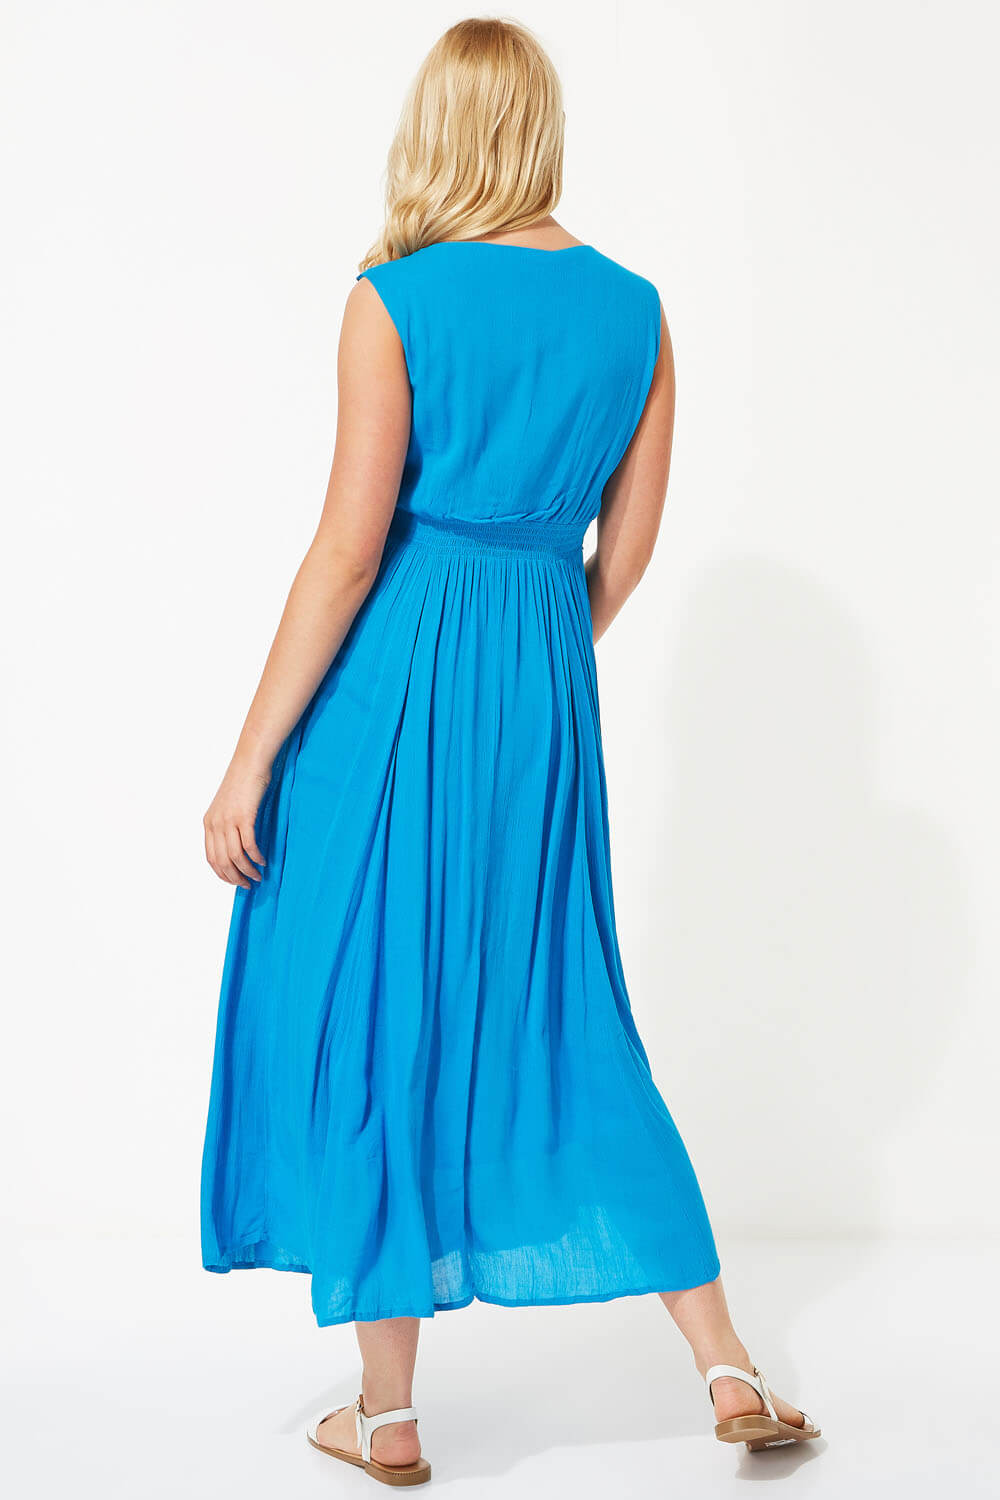 Turquoise Crochet Bodice Maxi Dress, Image 2 of 4